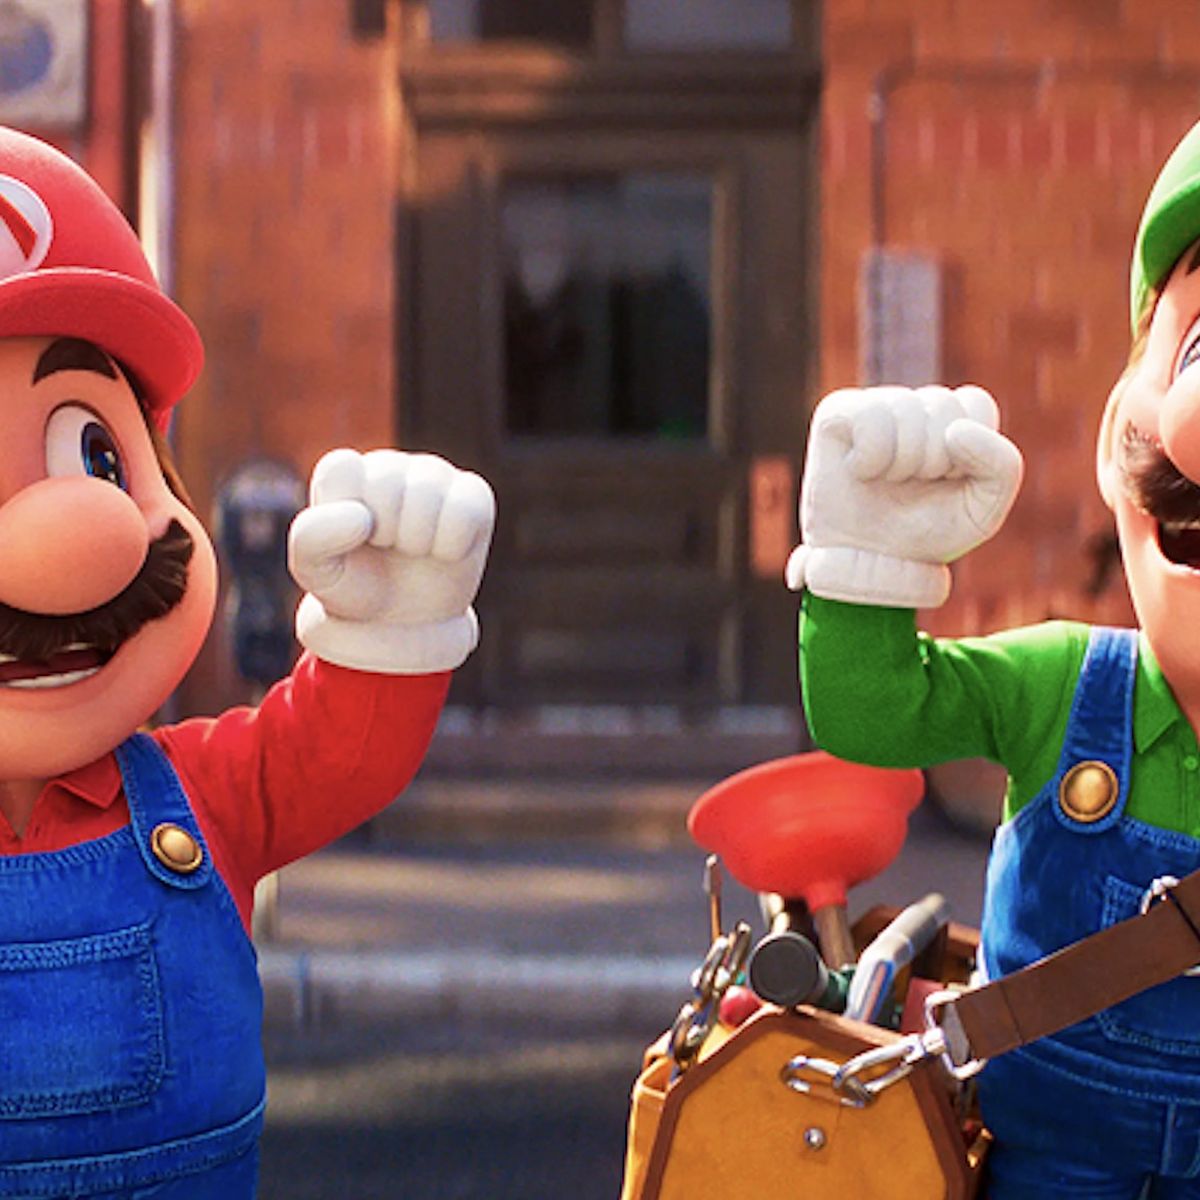 Super Mario Bros. La Película' llega a Movistar Plus+